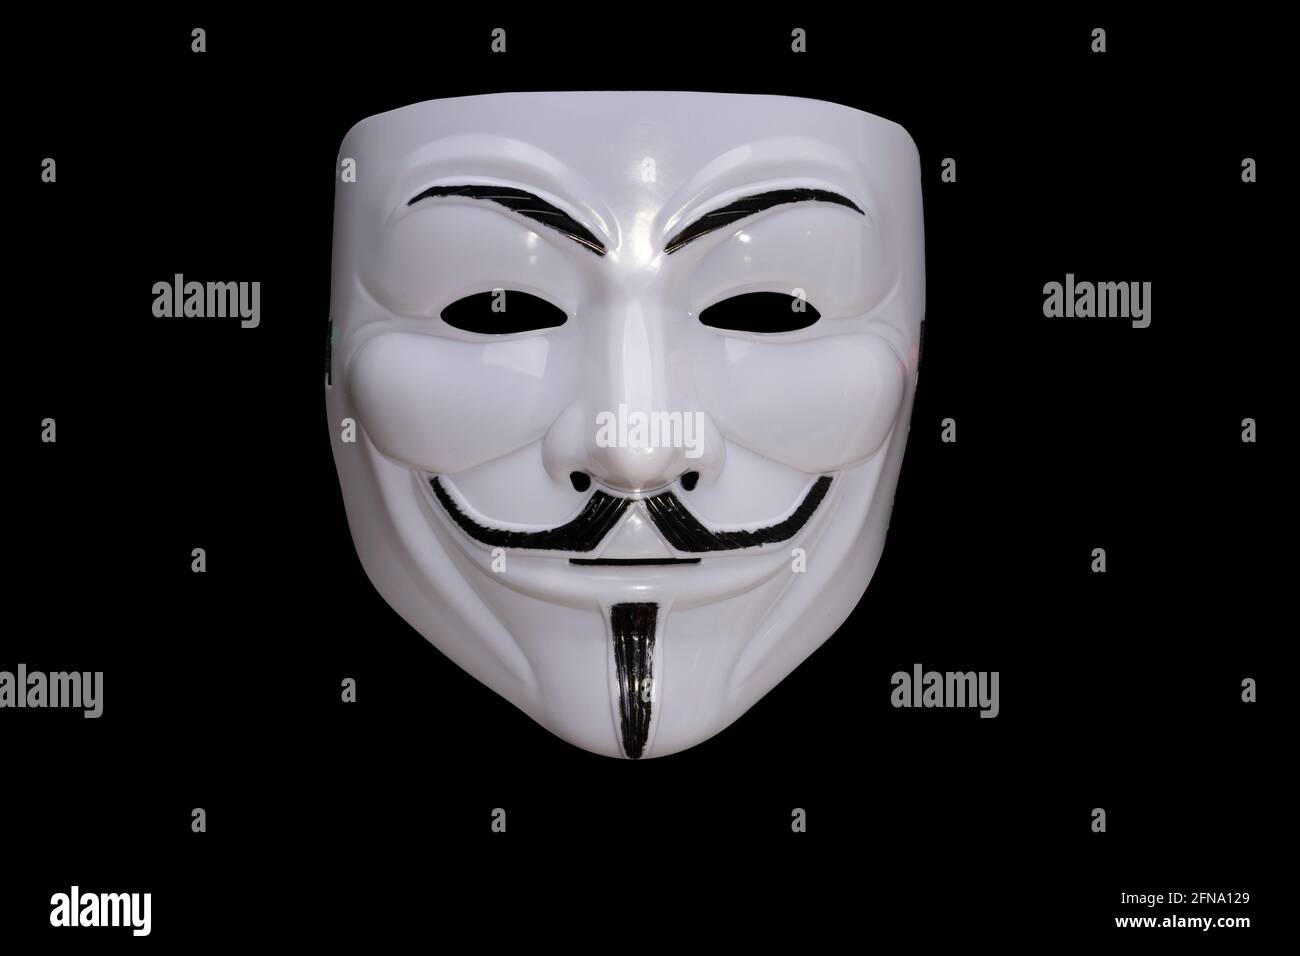 Masque anonyme isolé sur fond noir. Photo de haute qualité Banque D'Images